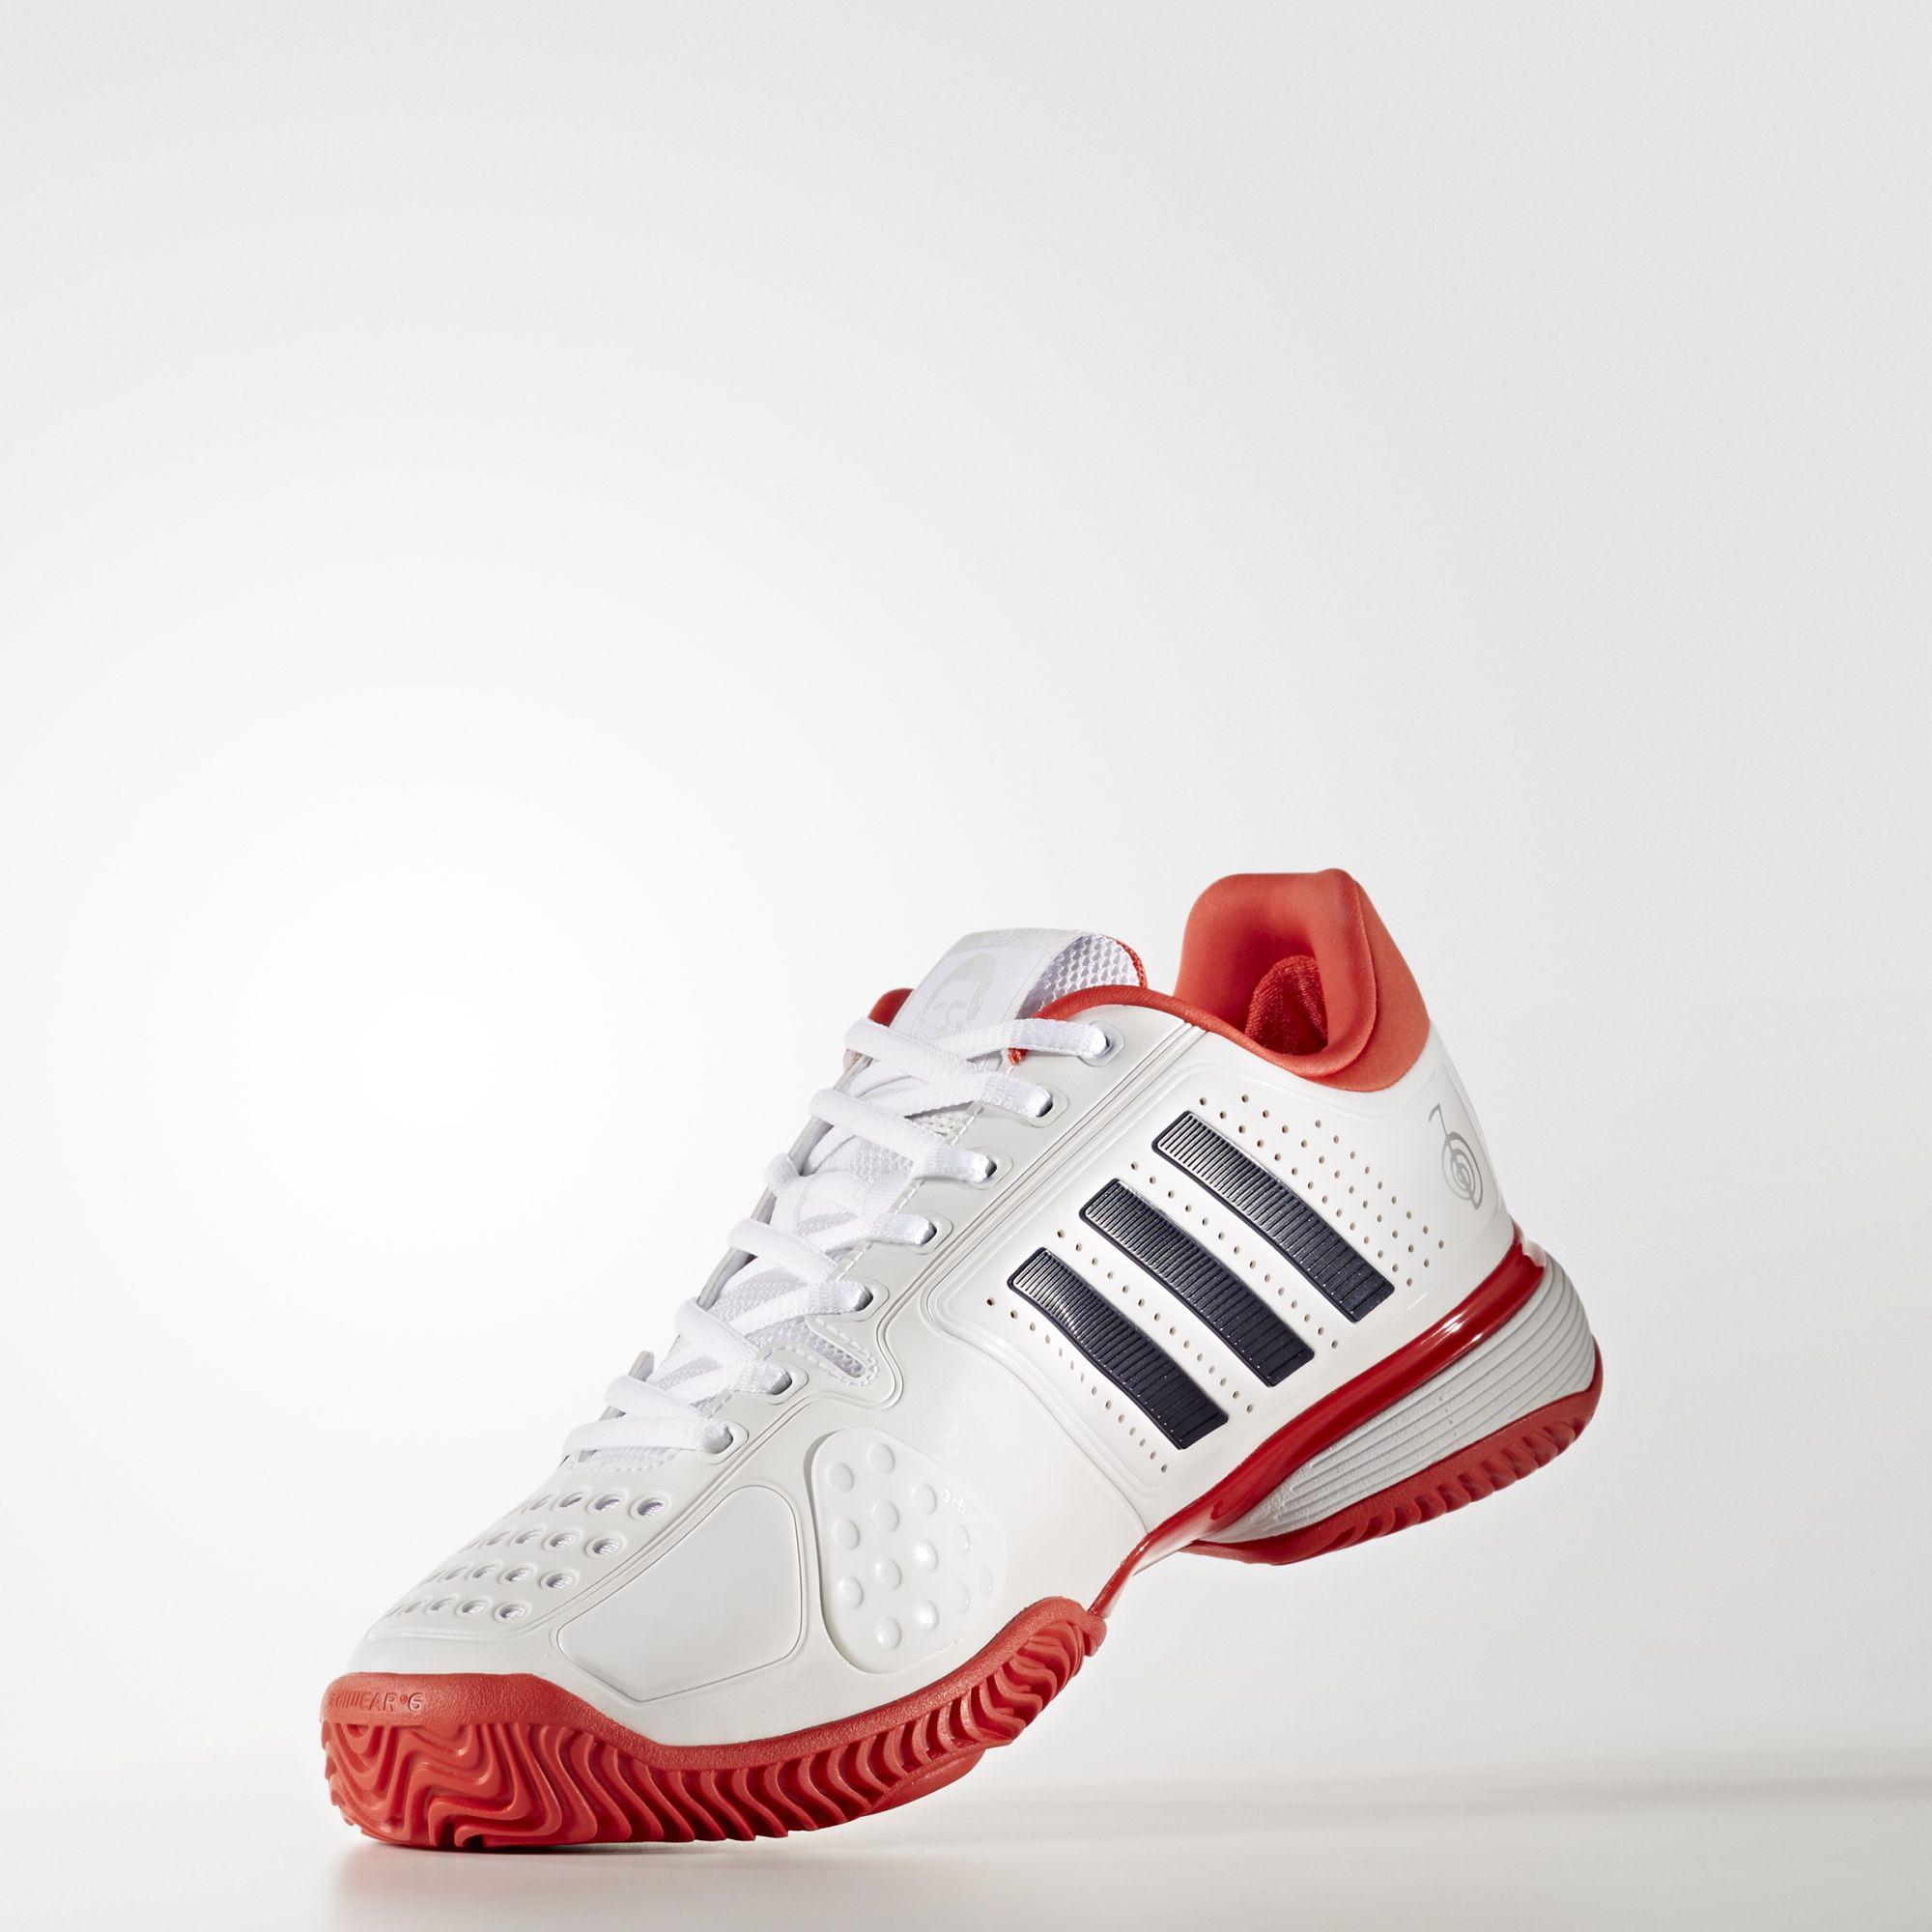 Adidas Mens Novak Pro Barricade Tennis Shoes - White/Red - Tennisnuts.com